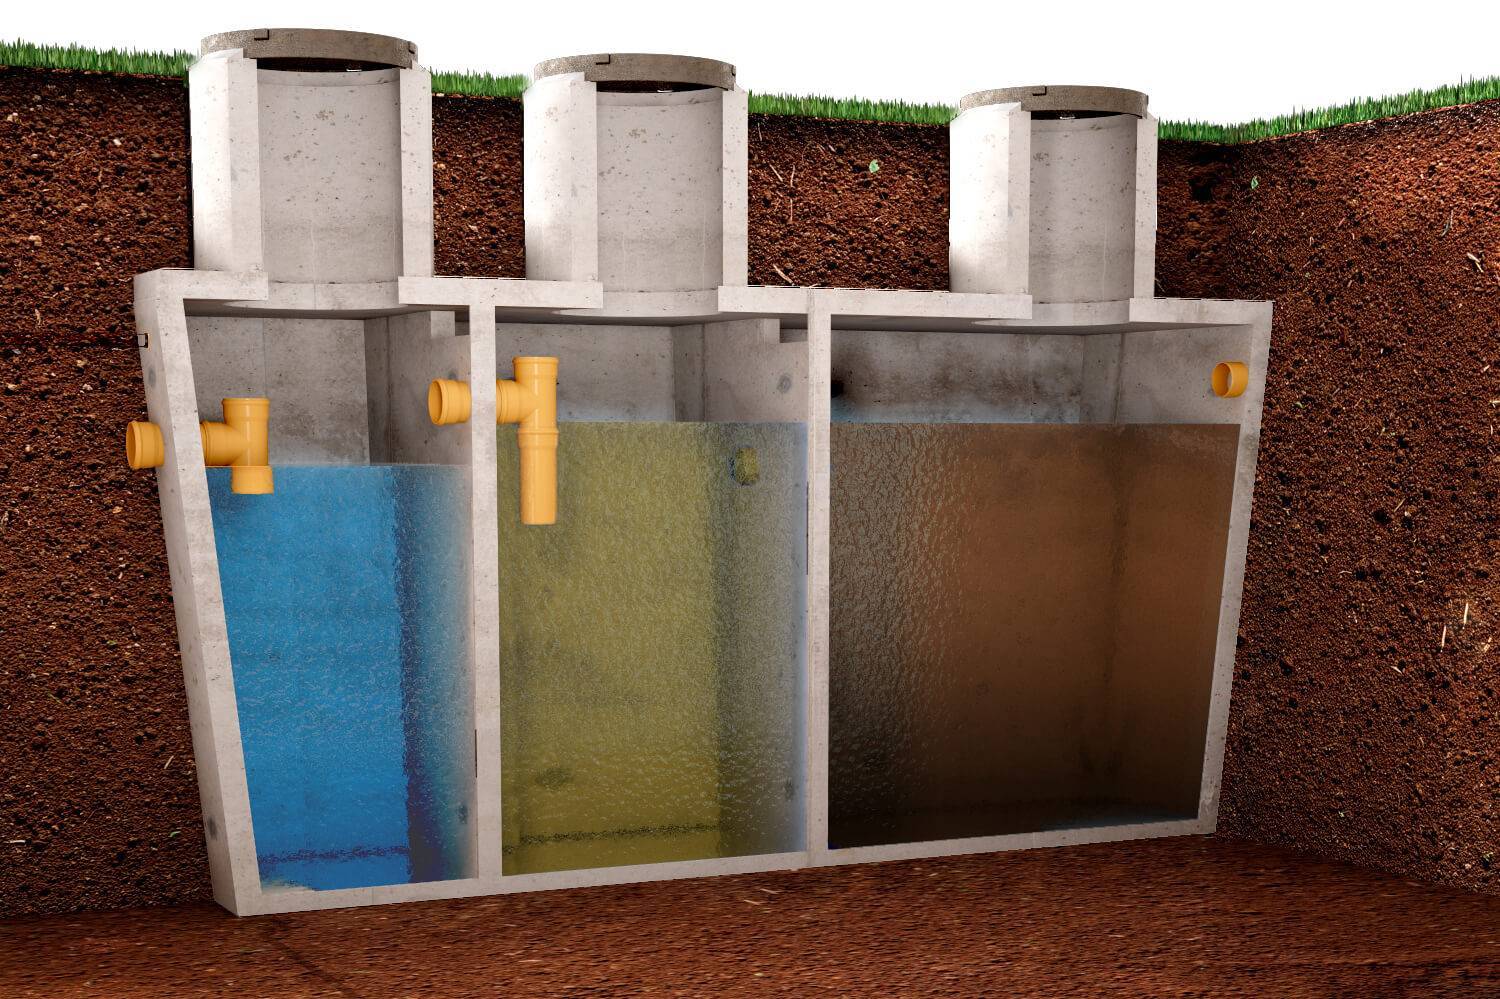 Как часто надо откачивать септик из бетонных колец на даче летом?